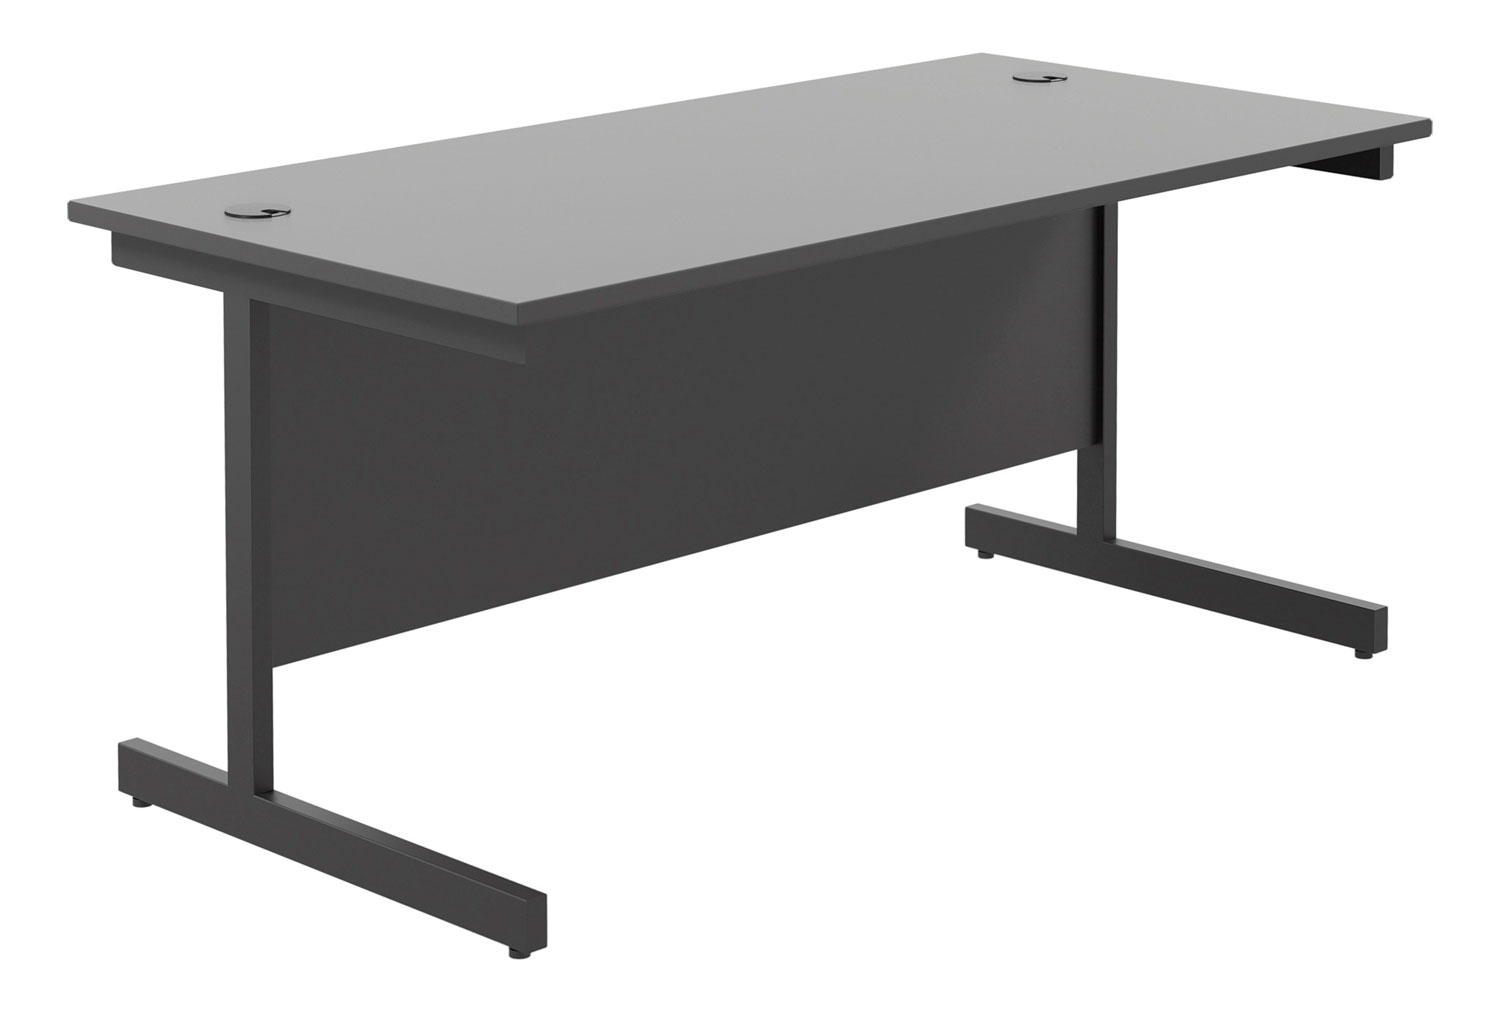 All Black C-Leg Rectangular Office Desk, 180wx80dx73h (cm), Fully Installed